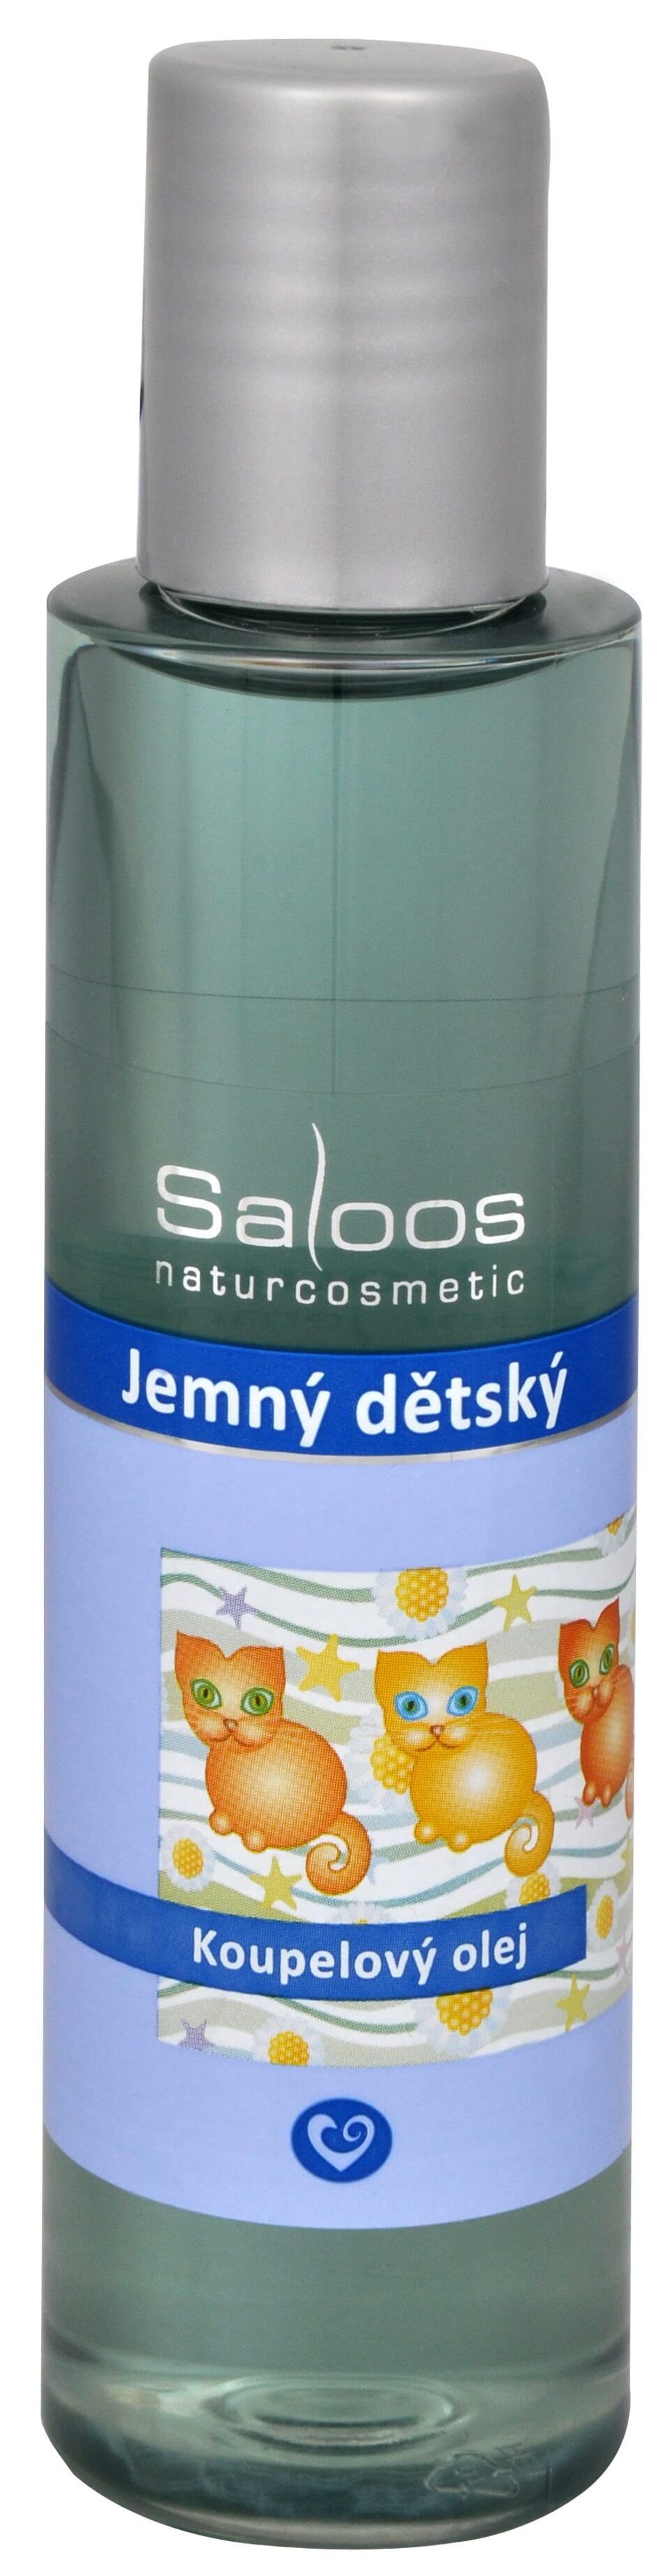 Zobrazit detail výrobku Saloos Koupelový olej - Jemný dětský 125 ml + 2 měsíce na vrácení zboží